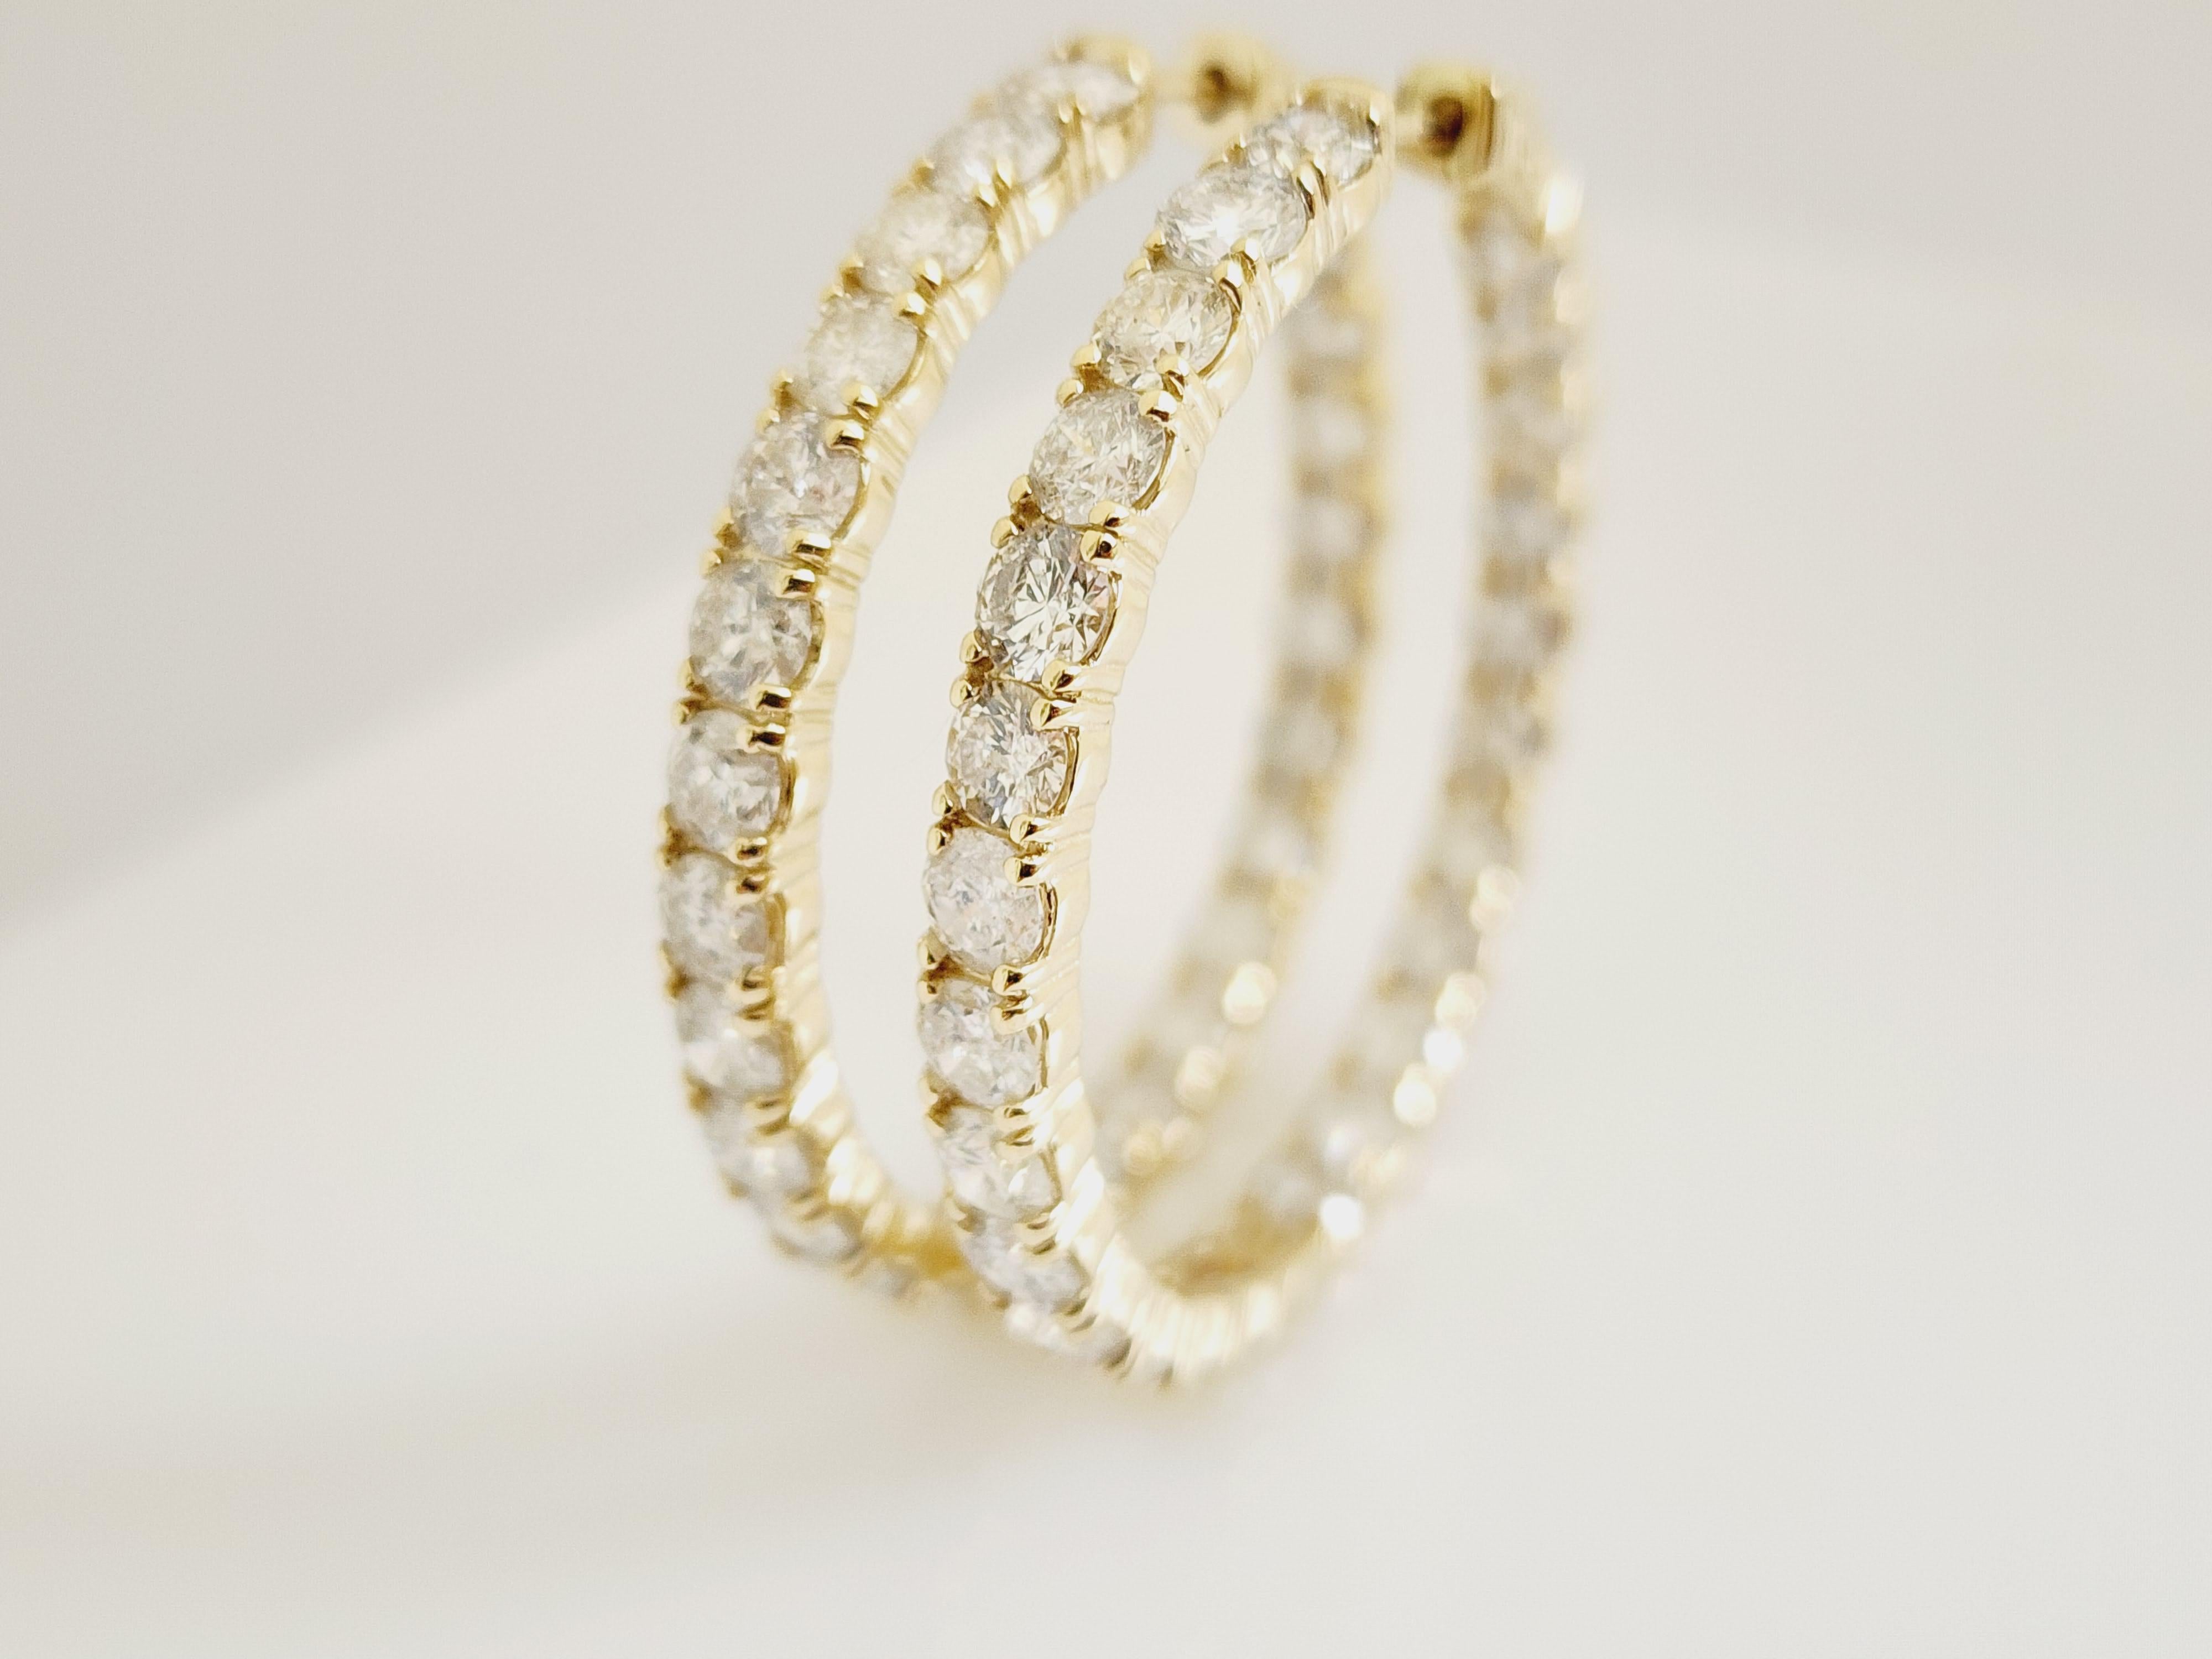 10.1 Carat Diamond Hoops Earrings 14 Karat Yellow Gold For Sale 2